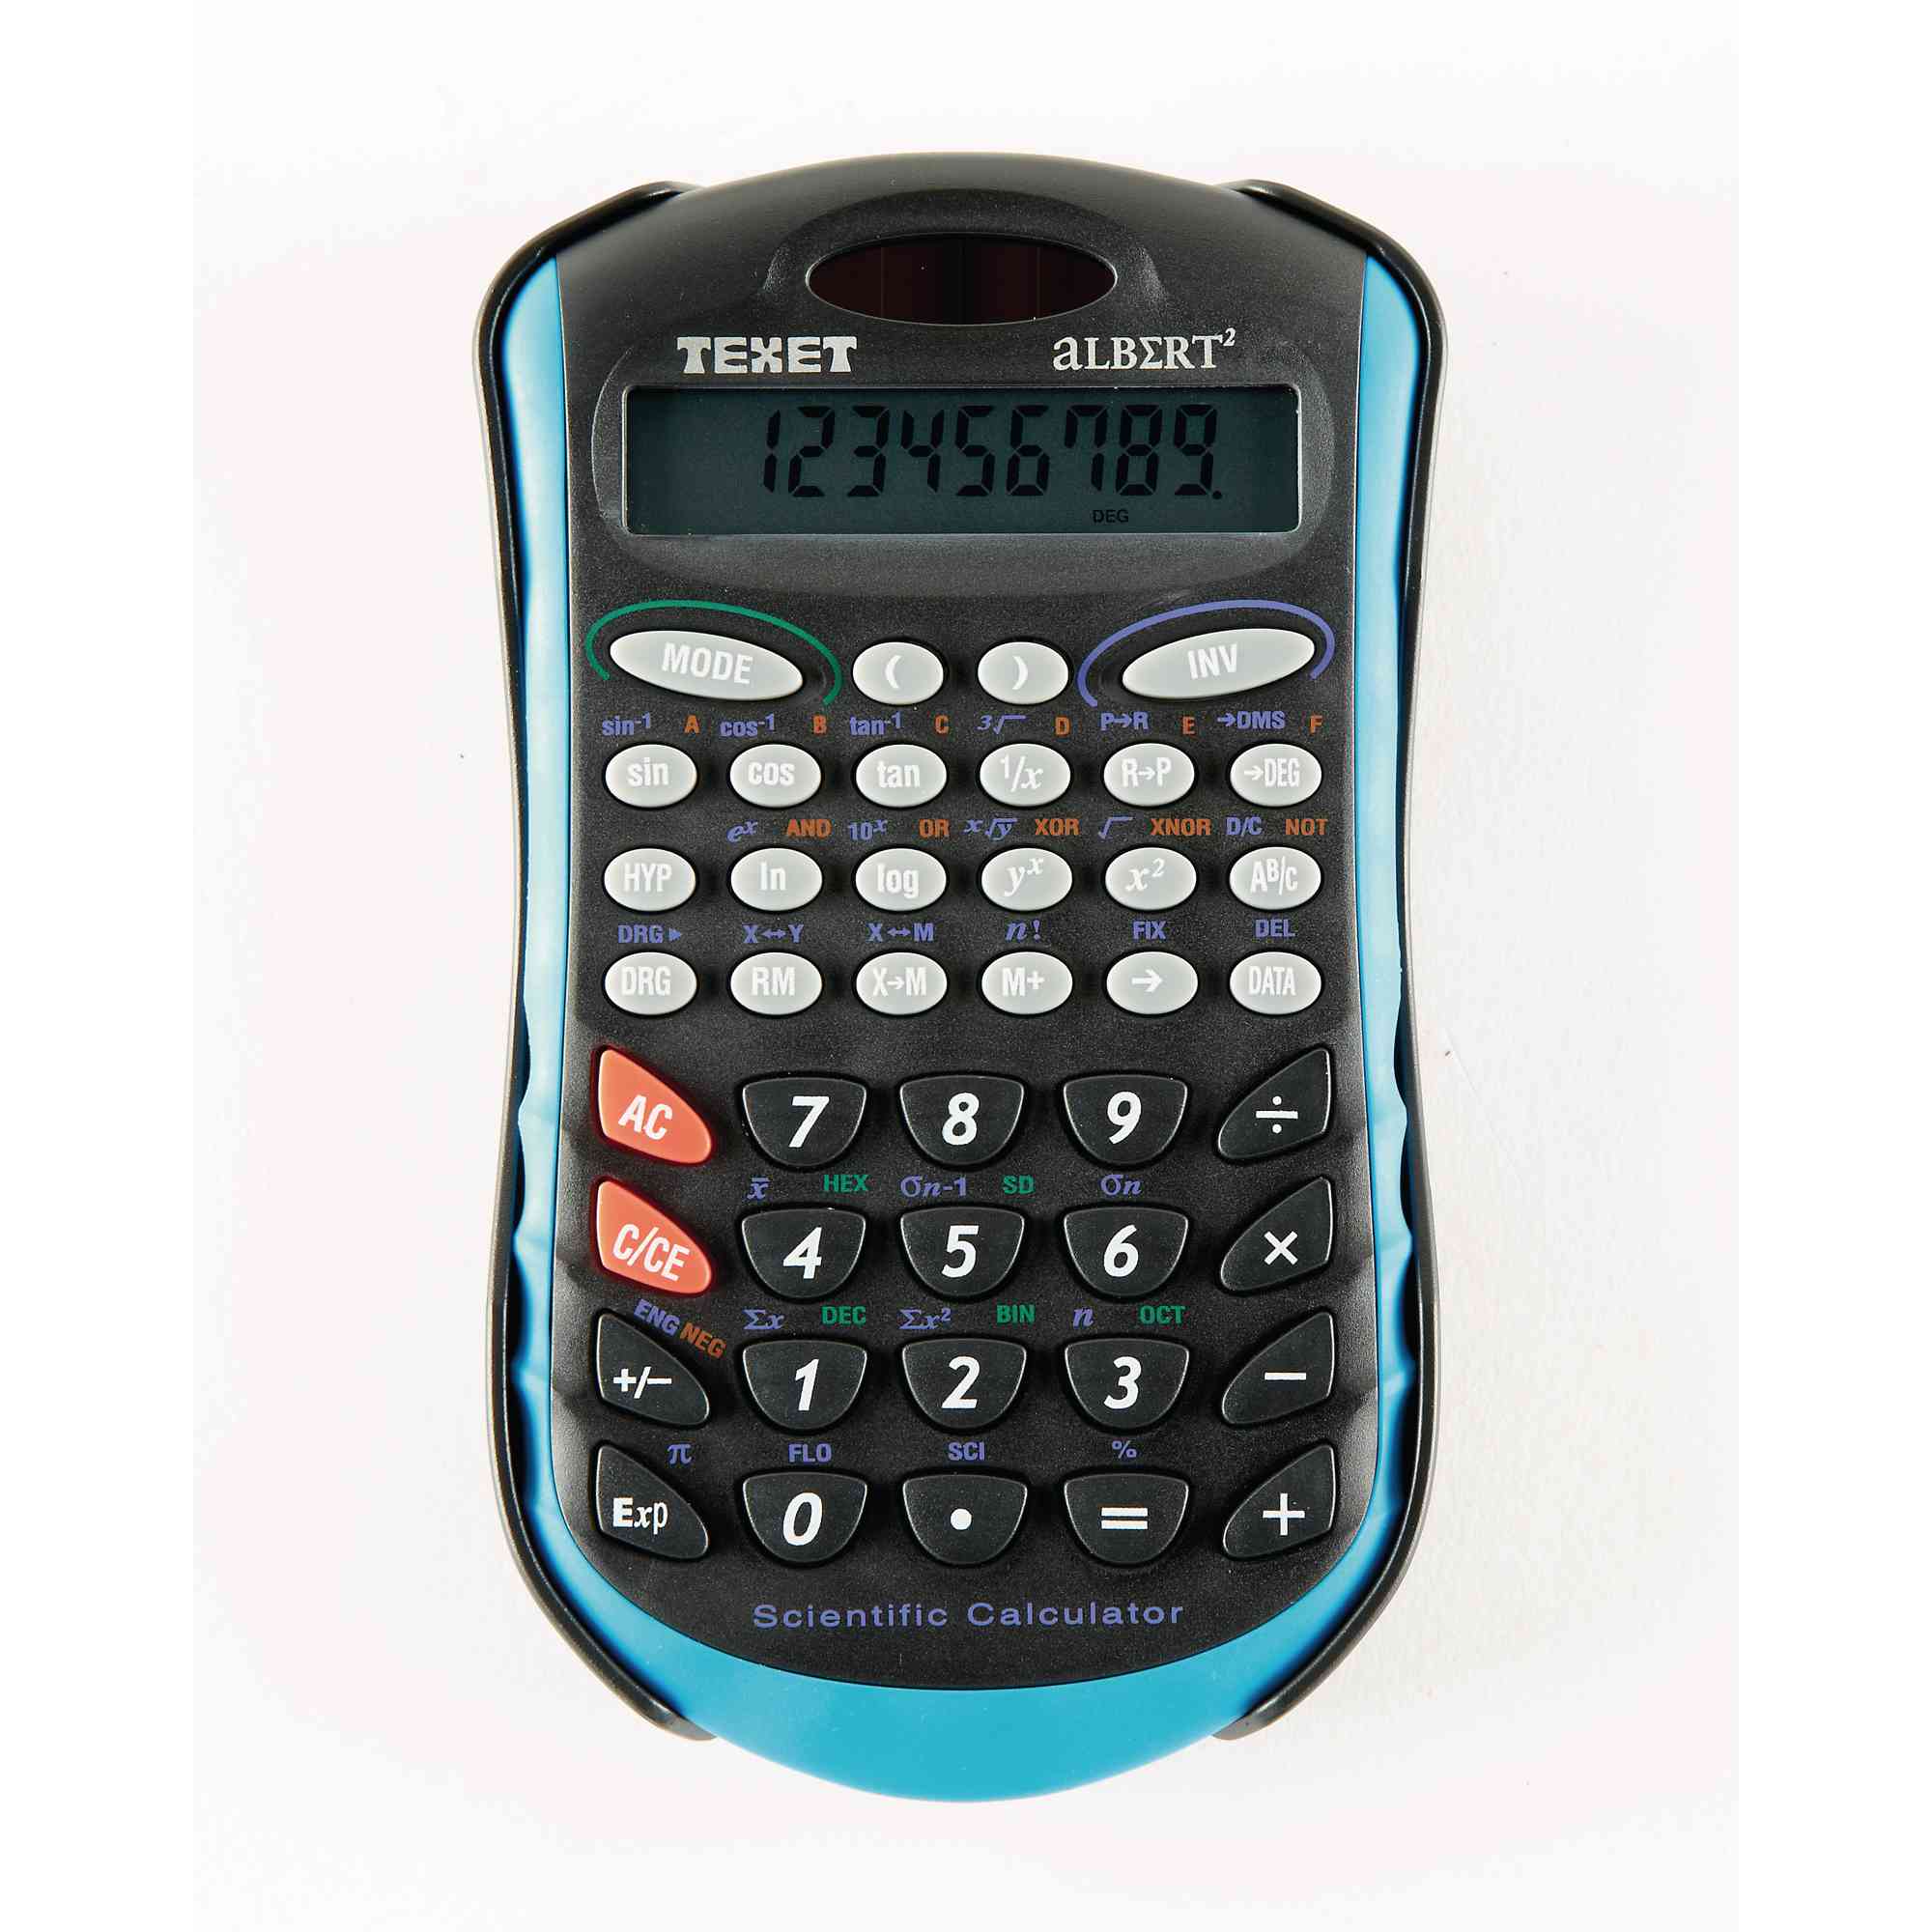 Texet Albert2 Calculator